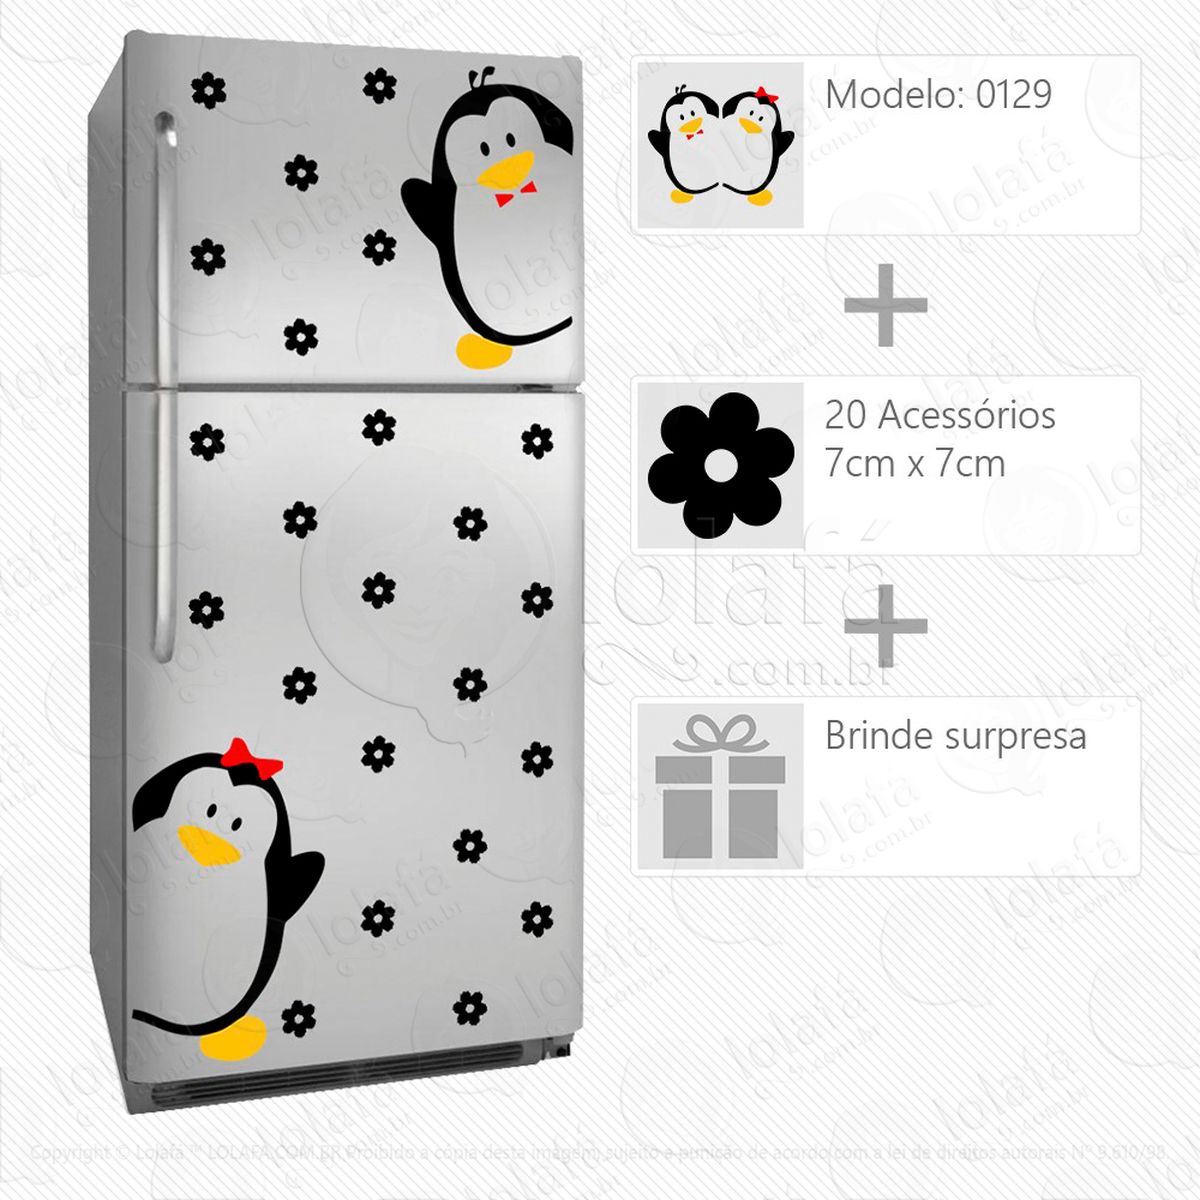 pinguins adesivo para geladeira e frigobar - mod:129